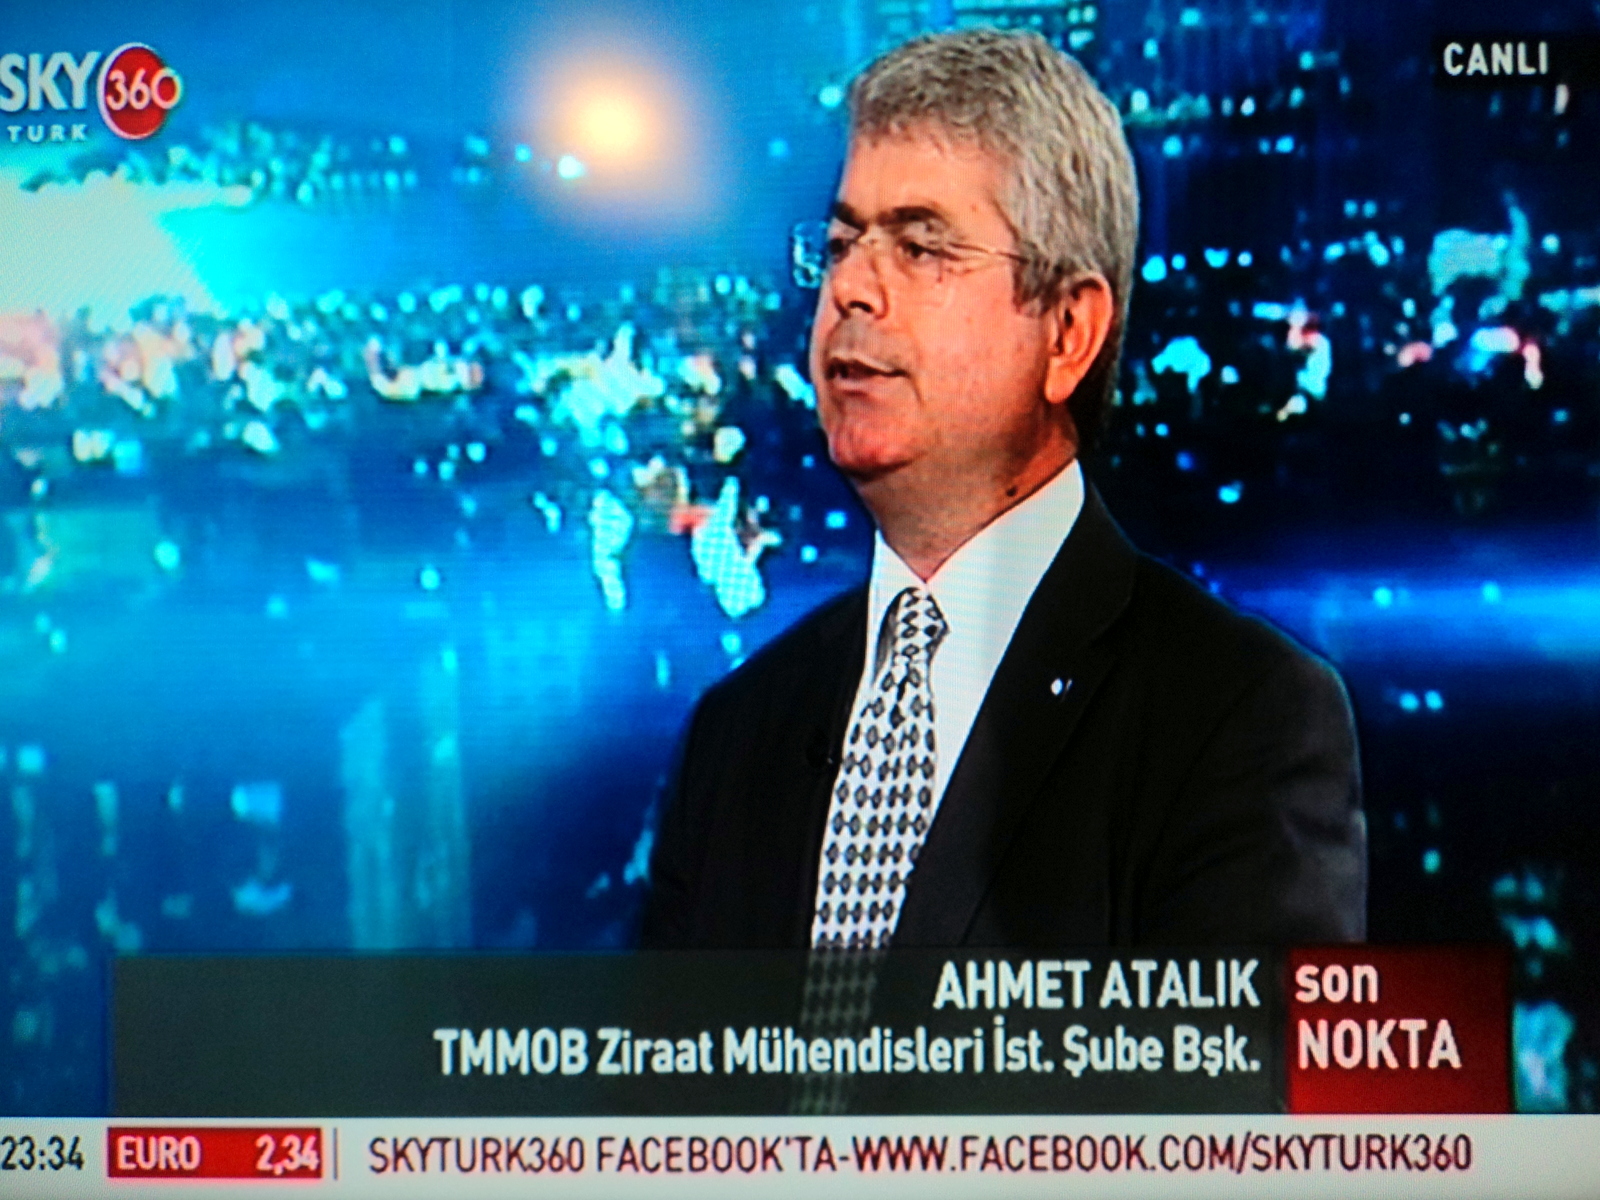 NTV, CNN TURK, SKY TURK, STAR, TV8 YAYINLARI